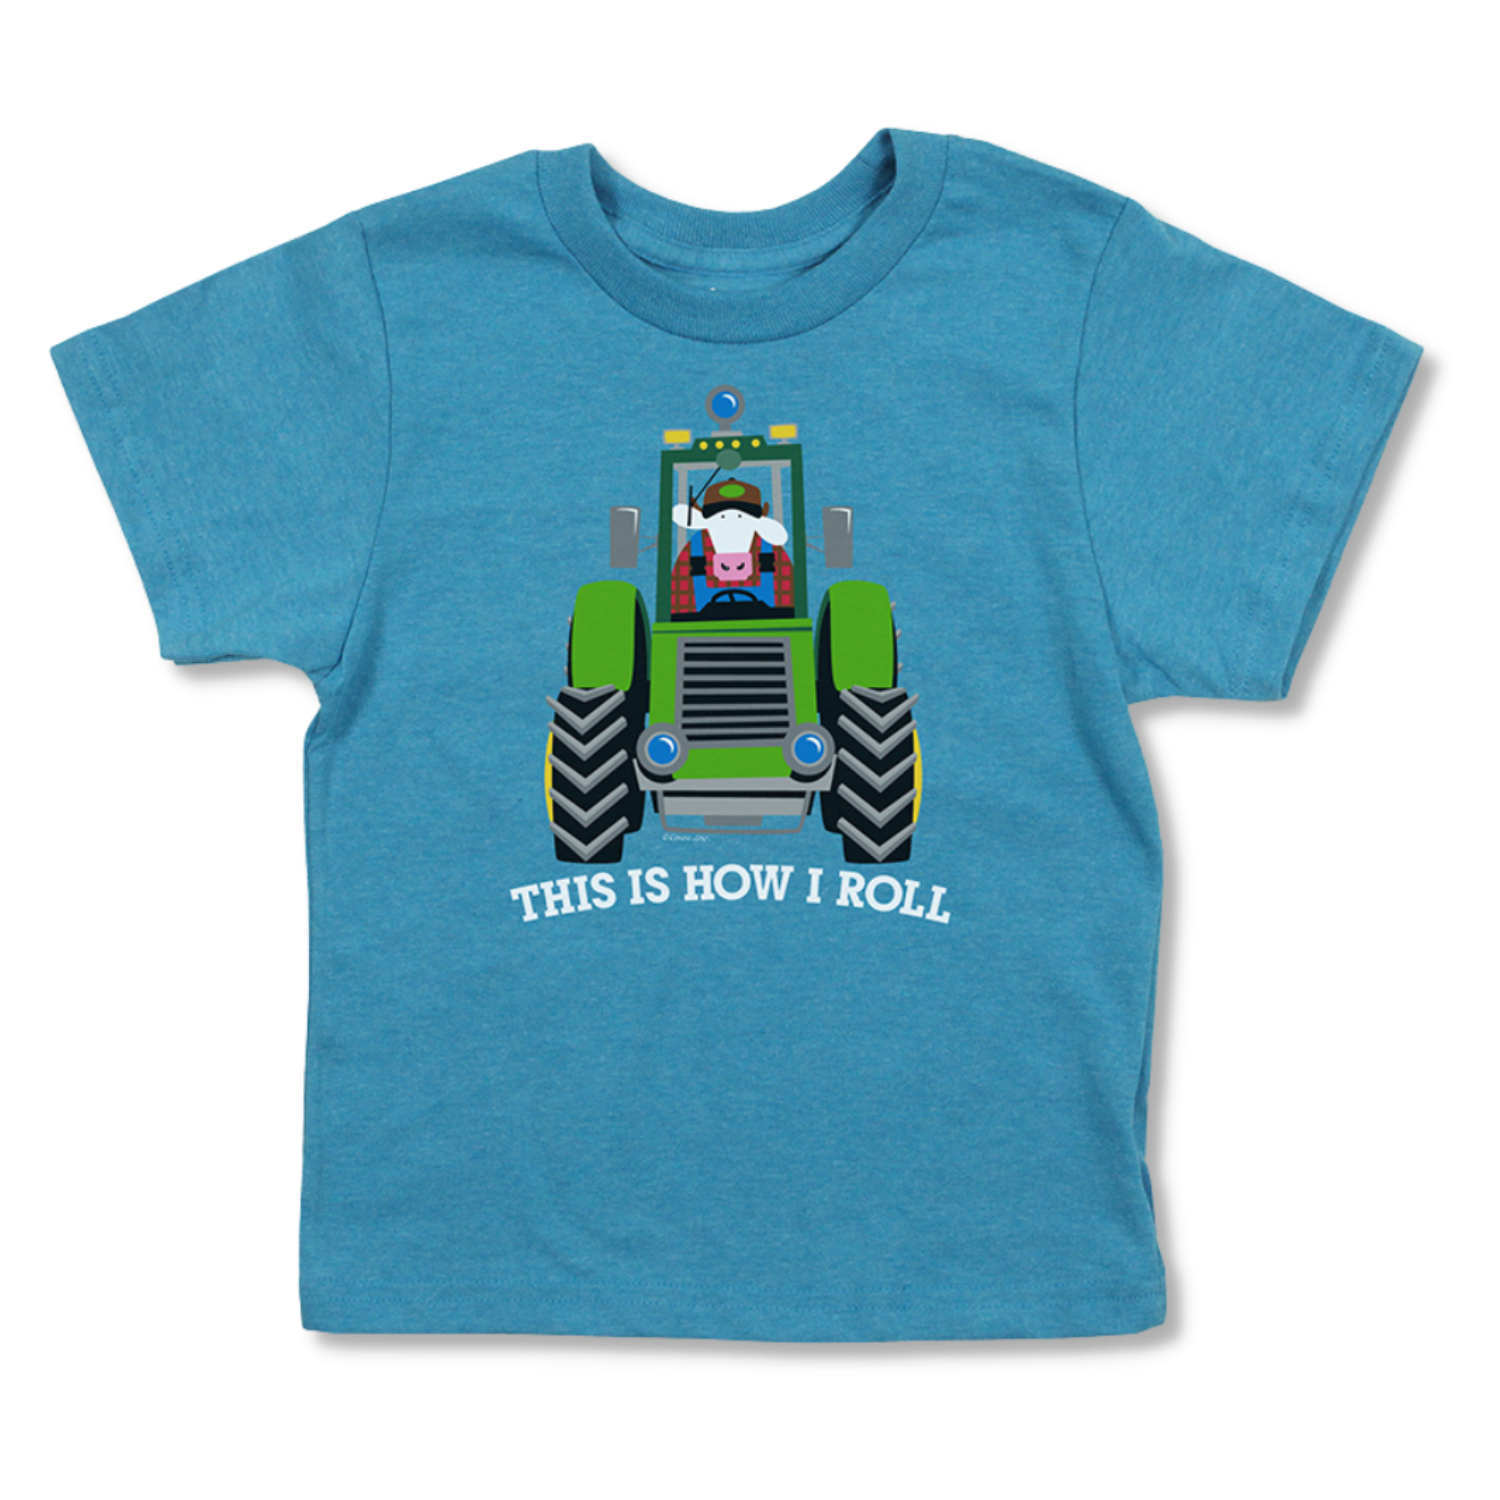 Tracteur t-shirt pour enfants